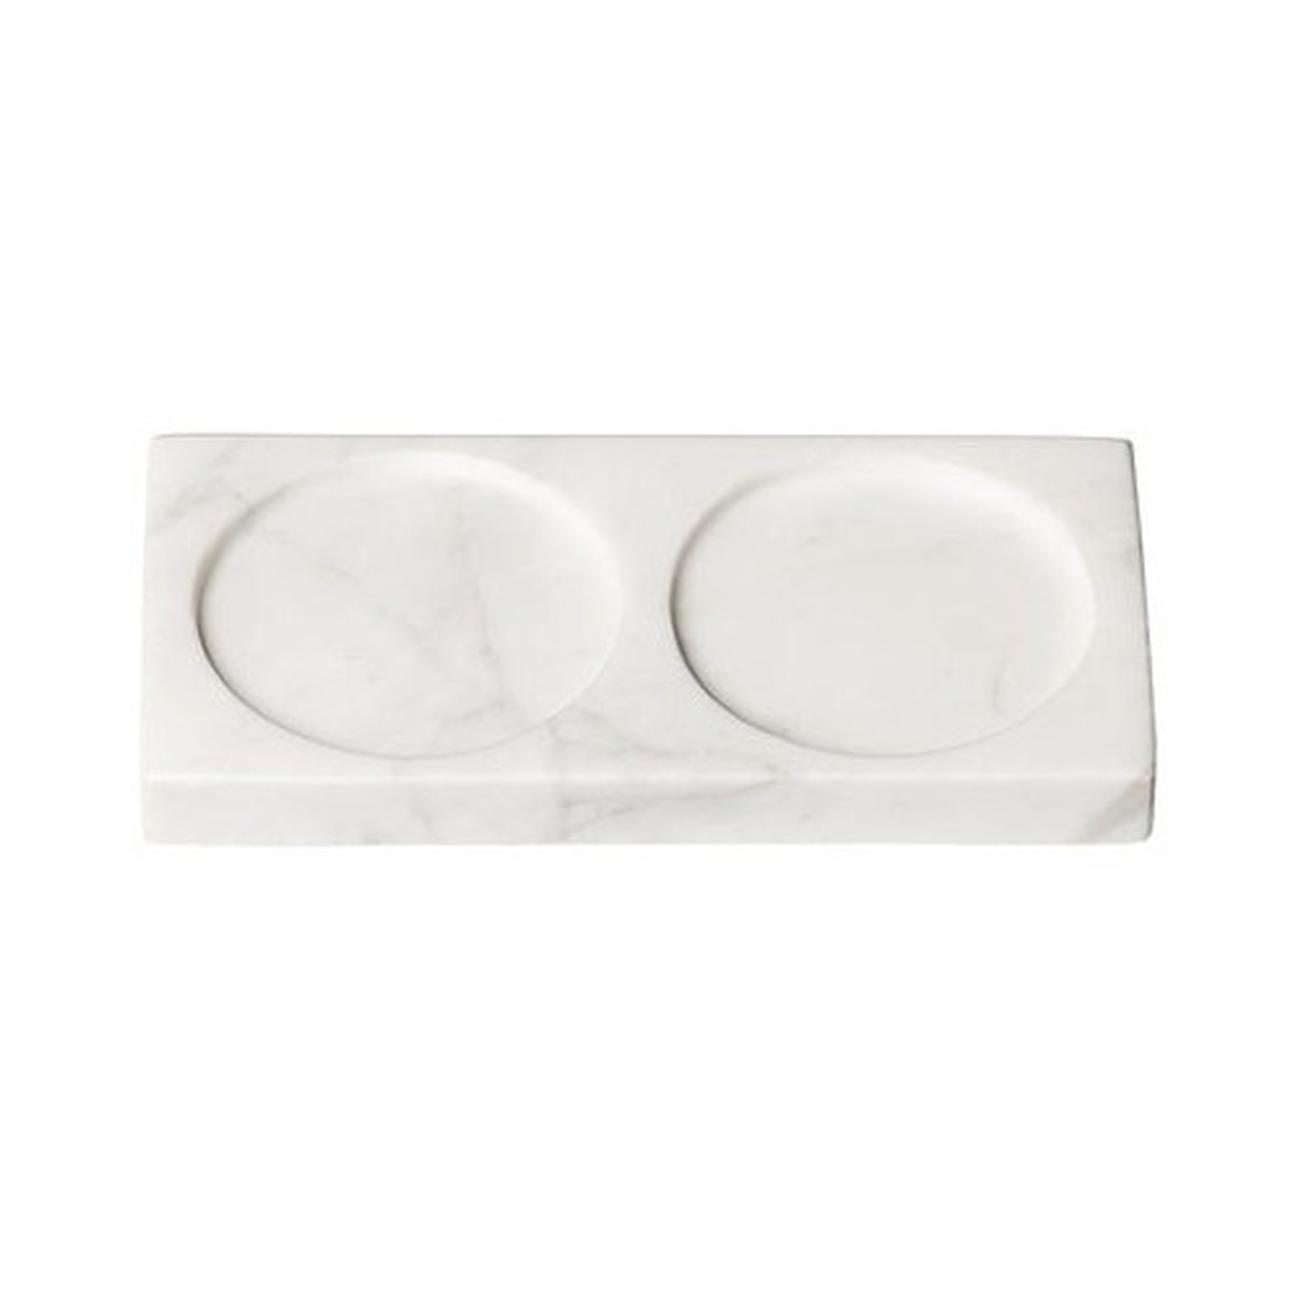 crg-tabletopper-white-marble-2 - CrushGrind Tabletopper White Marble 2